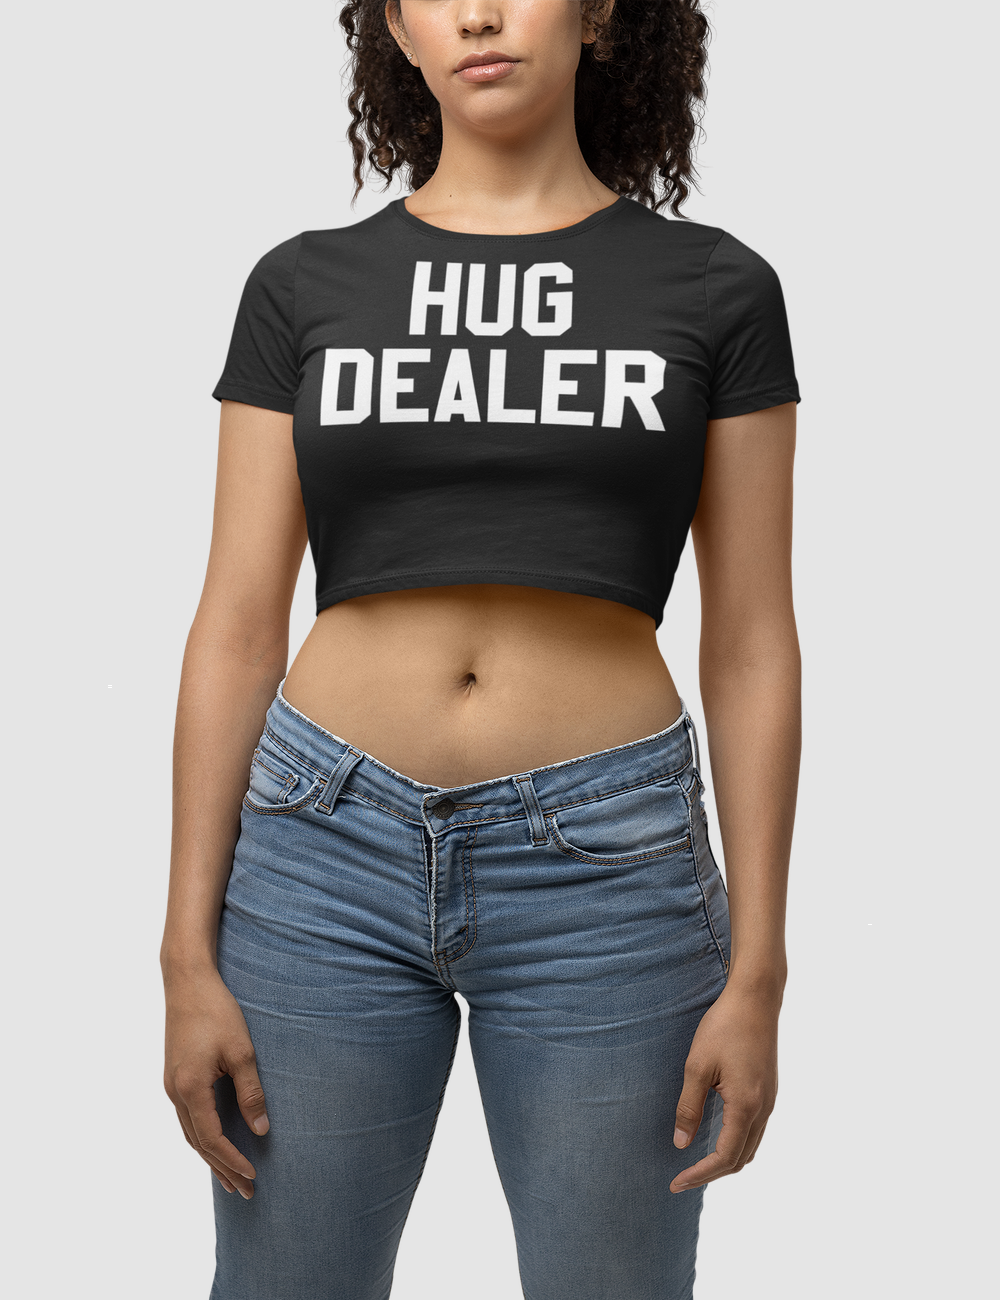 Hug Dealer Women's Fitted Crop Top T-Shirt OniTakai